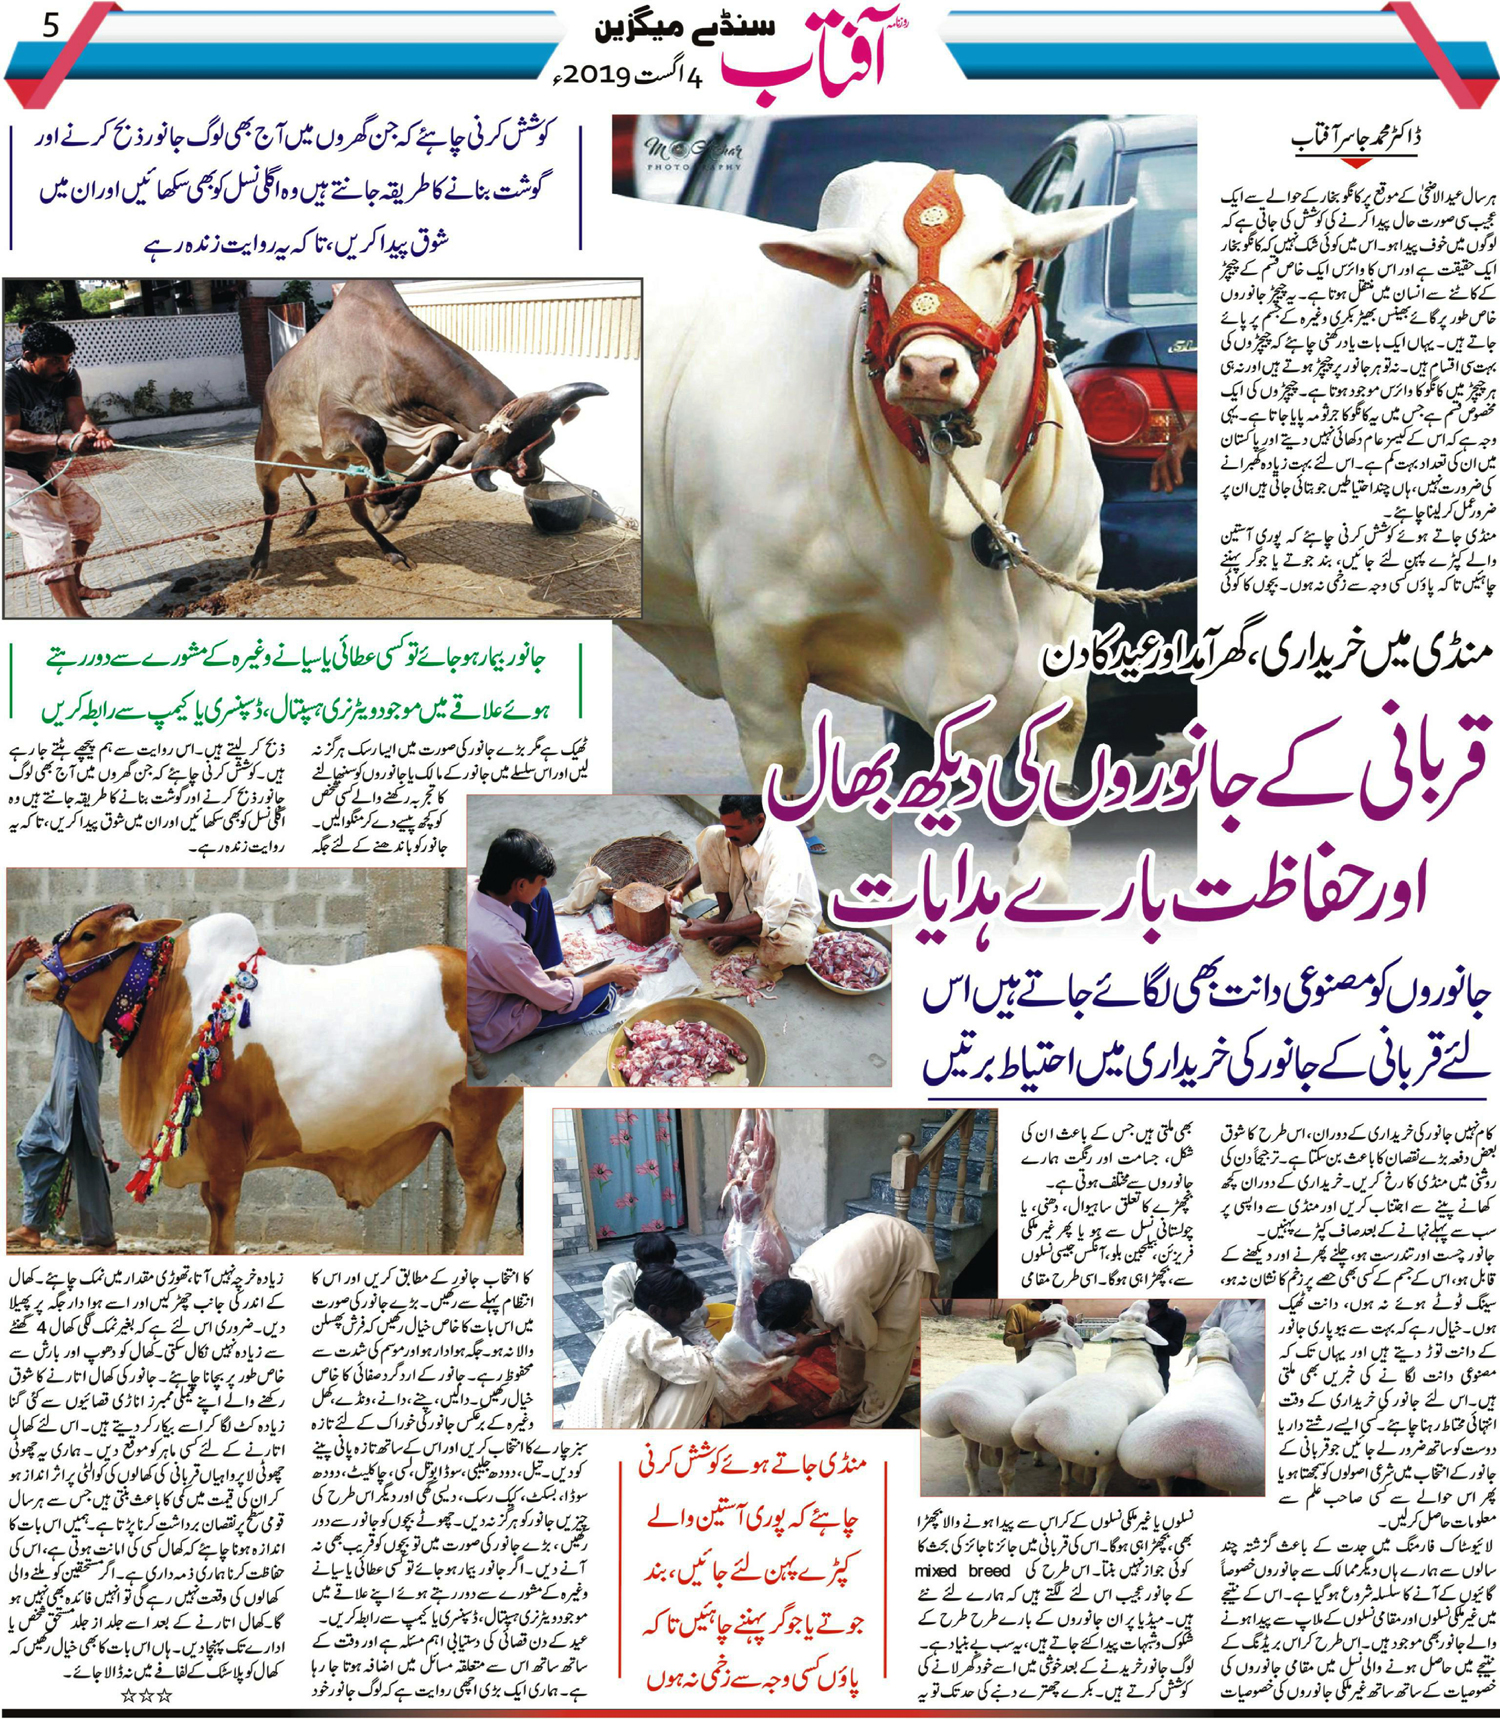 Care of Qurbani Animal or sacrificial animal Distribution sacrificial meat or qurbani meat.